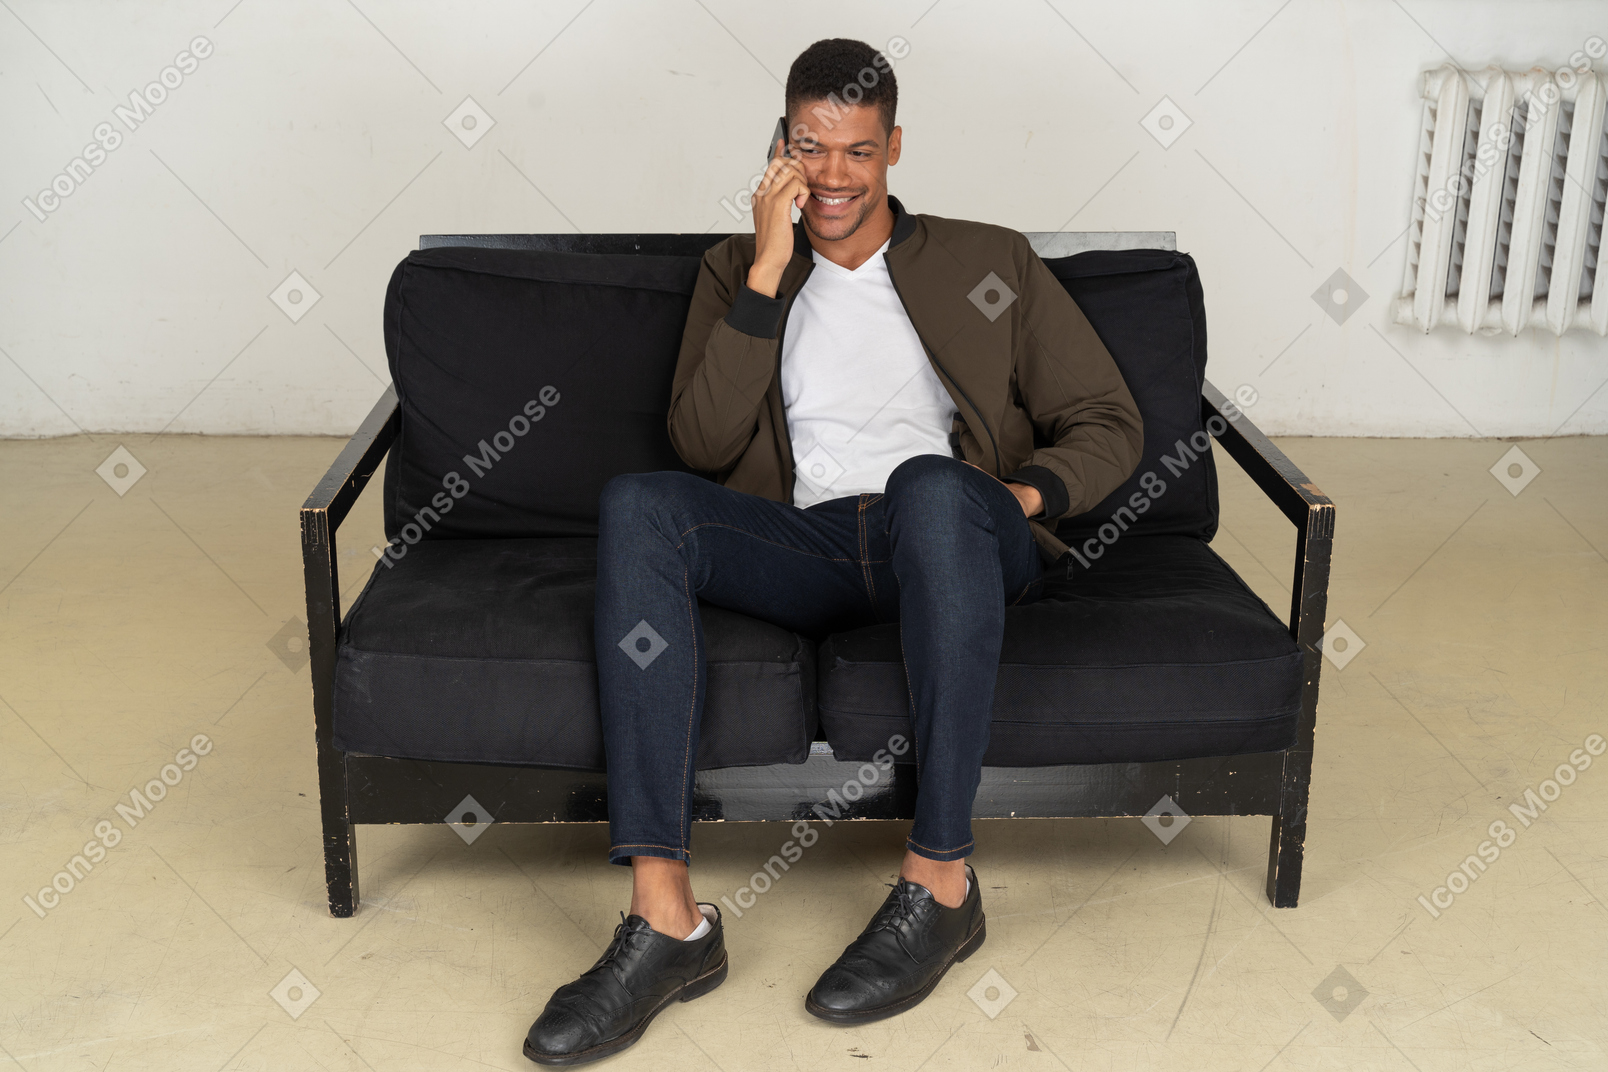 Vista frontal de un sonriente joven sentado en un sofá y hablando por su teléfono